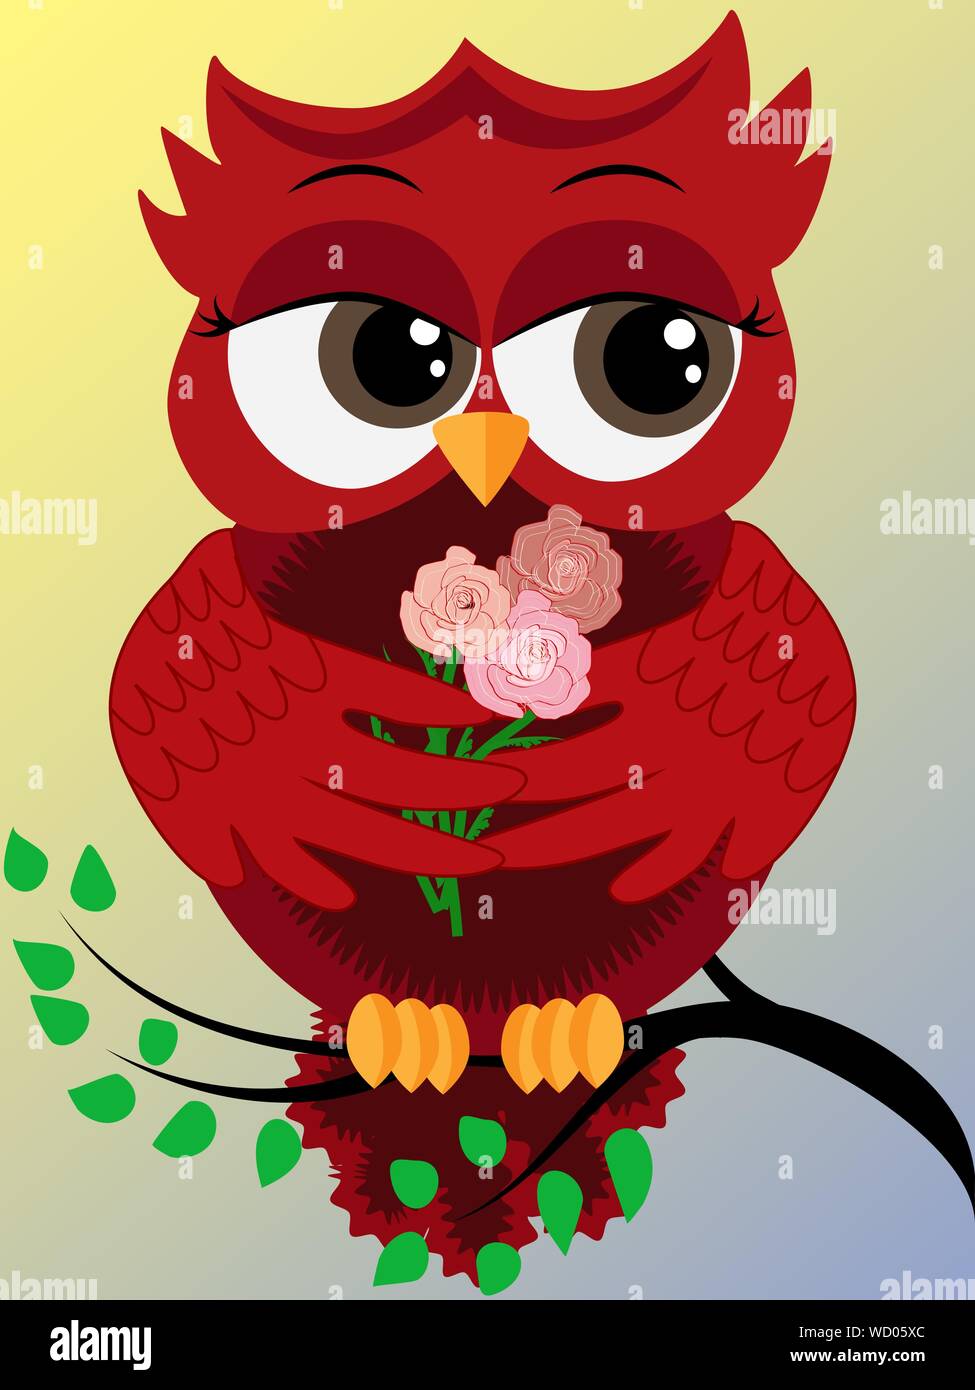 Nett schön flirtatious rote Eule auf einem Ast mit Drei Rosen in den  Flügeln Stock-Vektorgrafik - Alamy